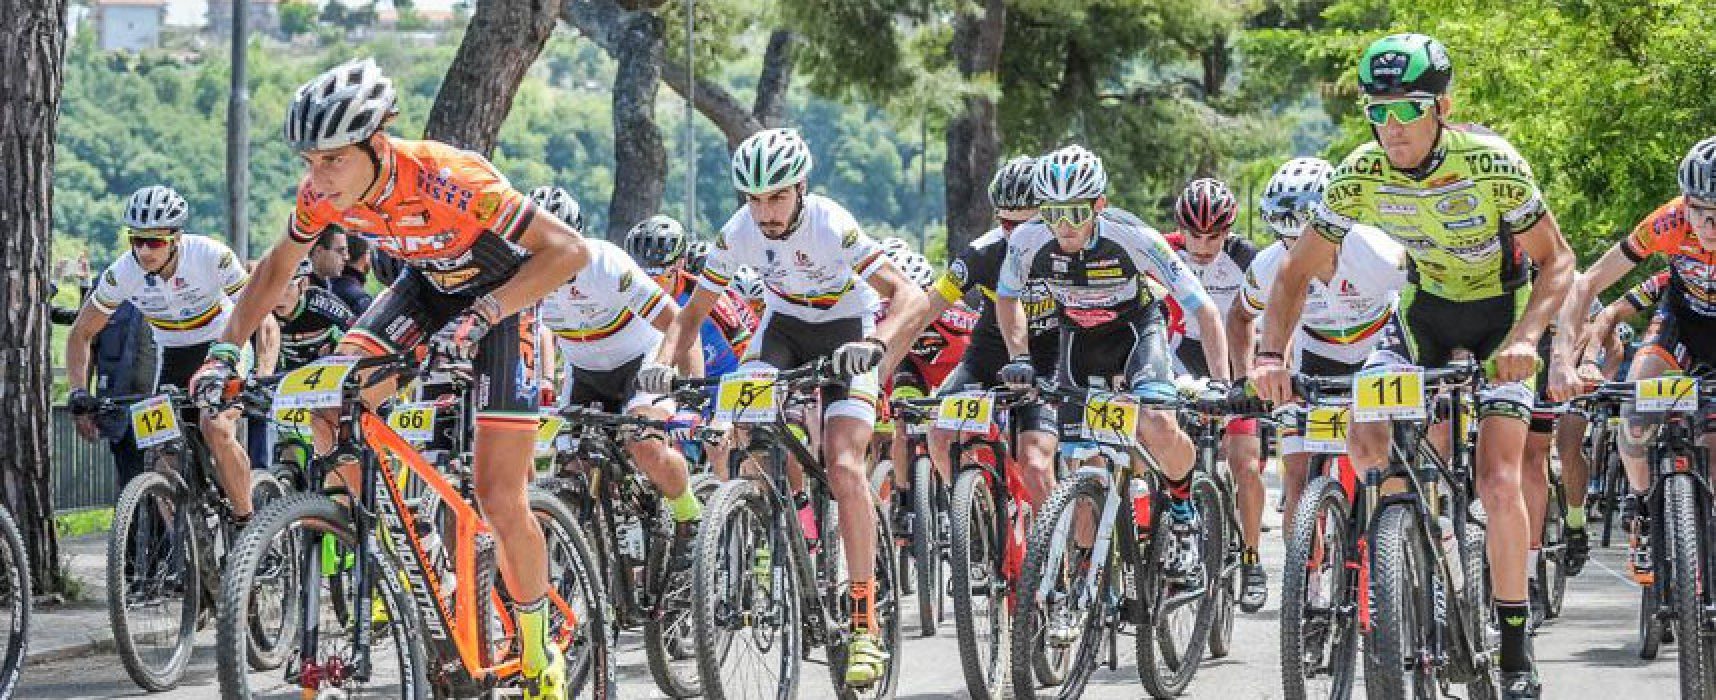 Polisportiva Cavallaro, buoni riscontri nelle gare Mountain Bike in Abruzzo